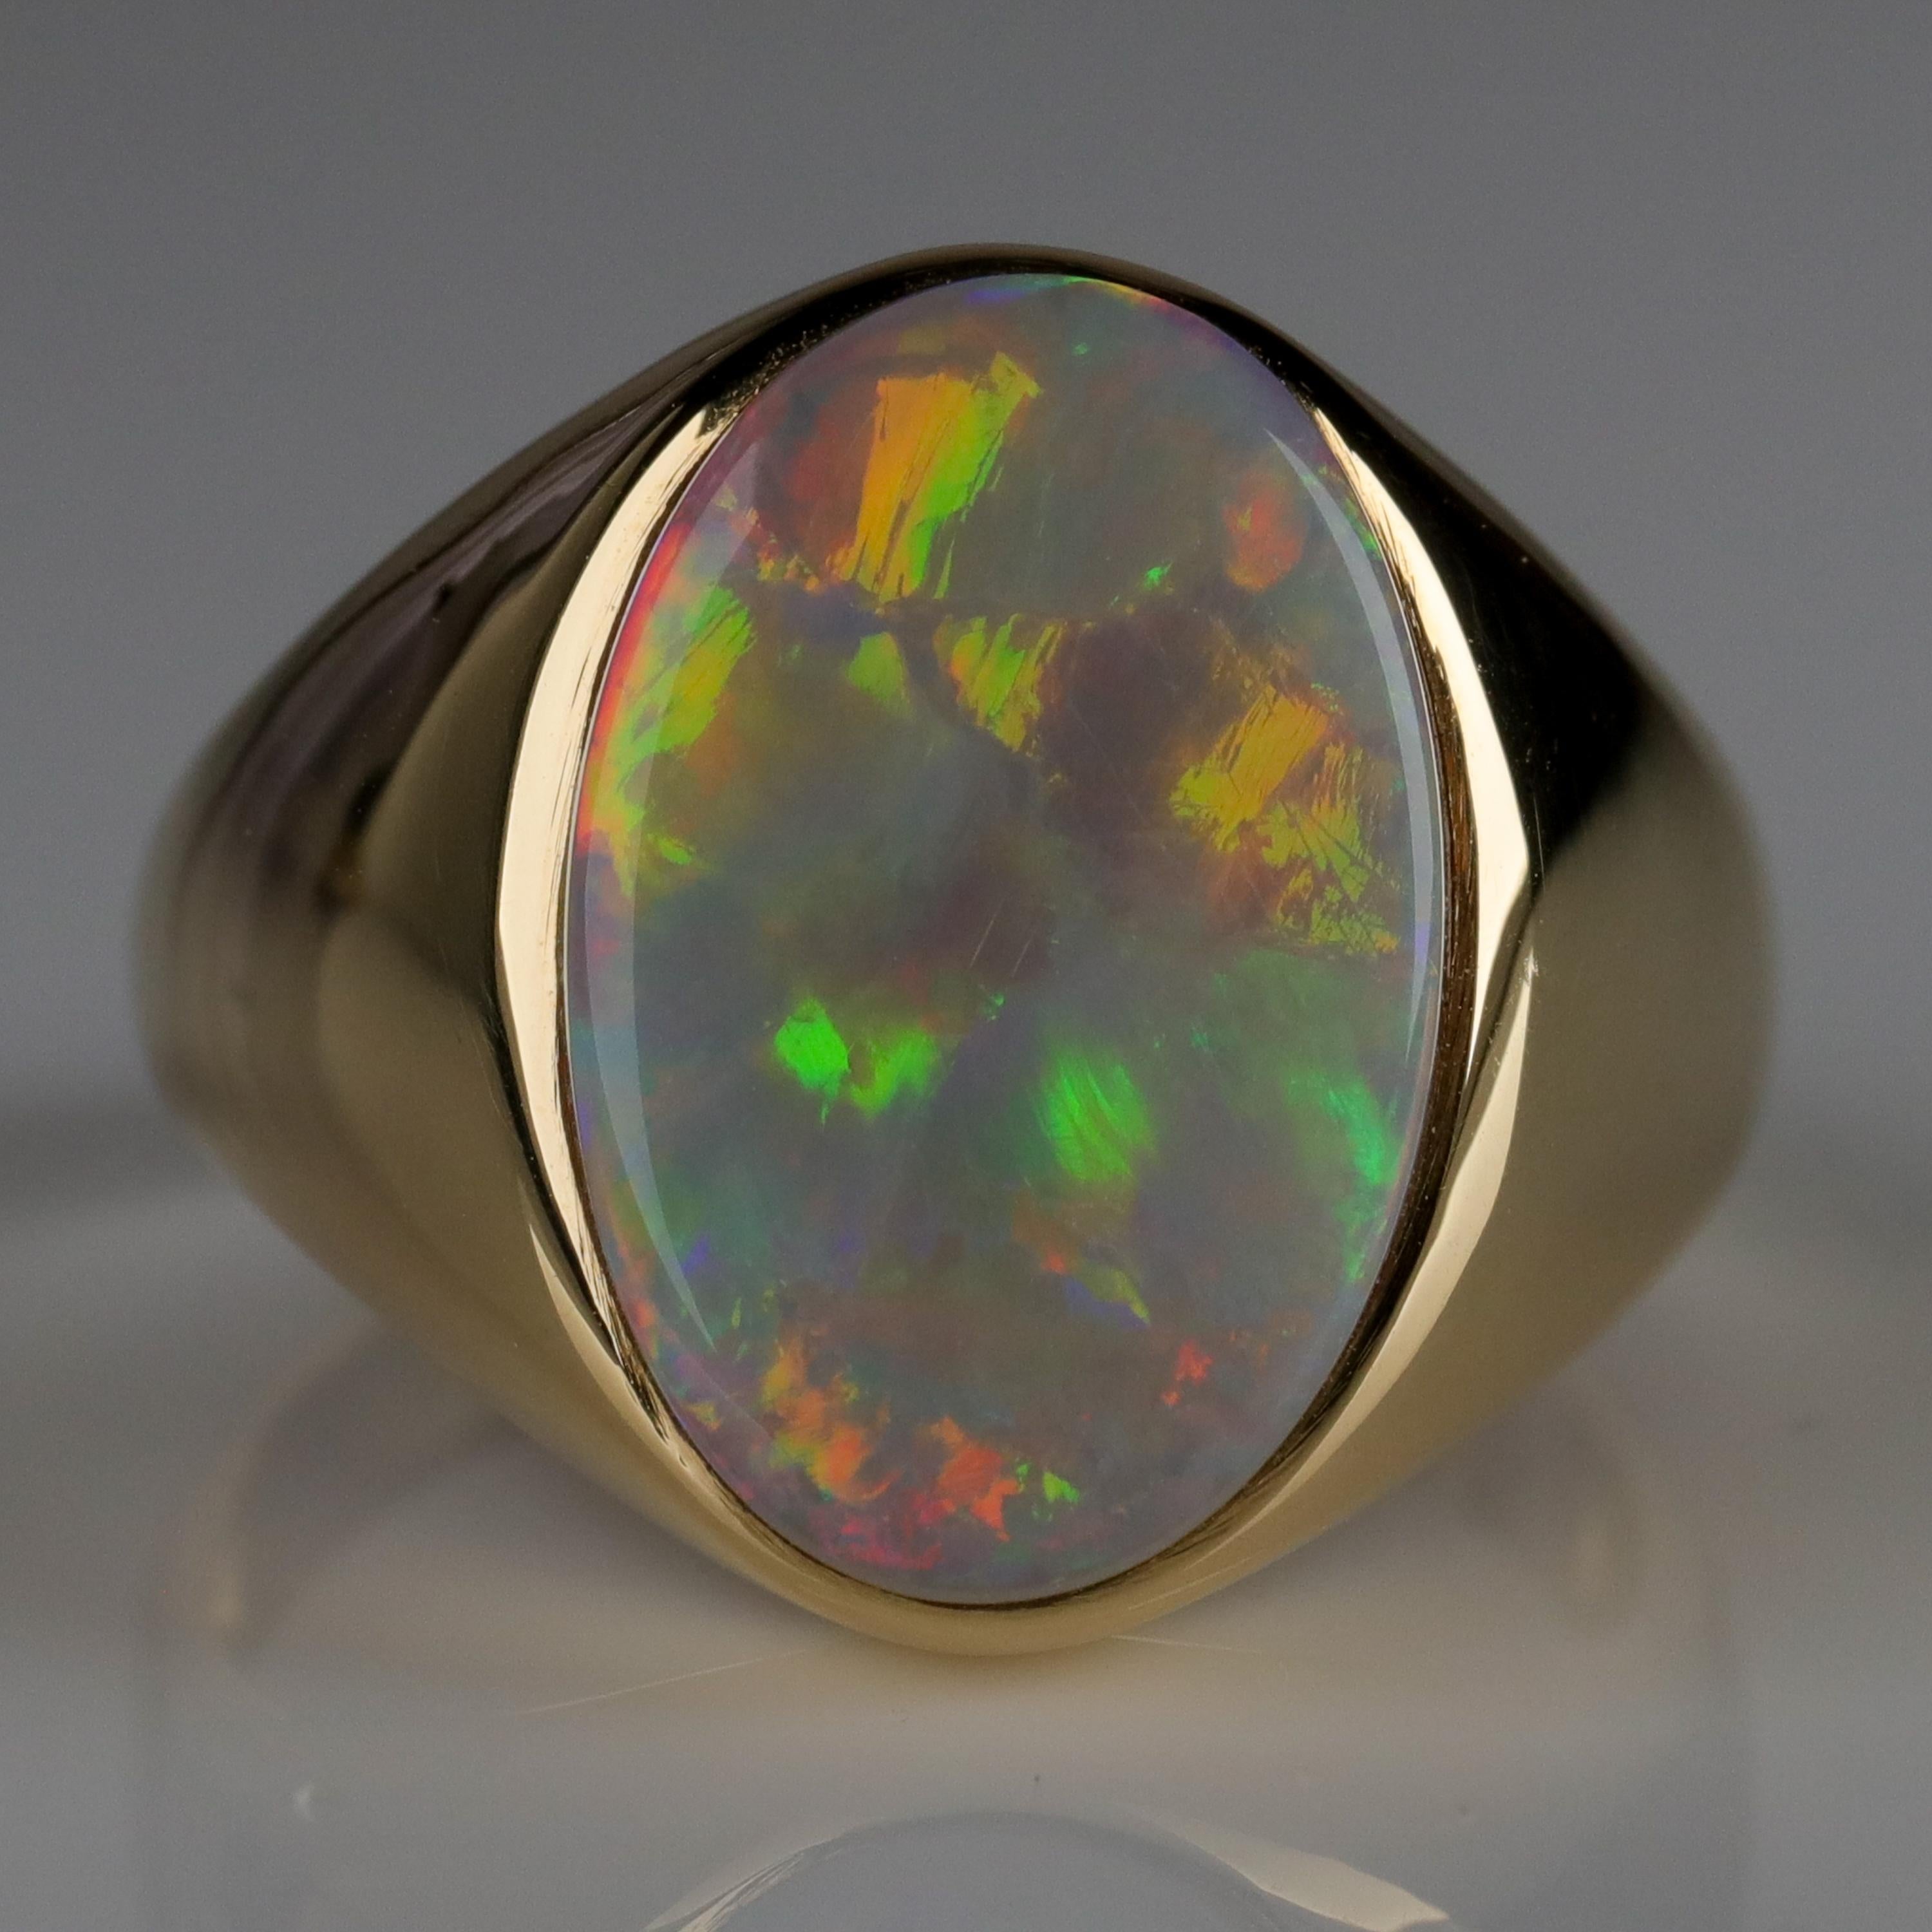 Men's Australian White Opal Ring with Full Spectrum Broad Flash 1